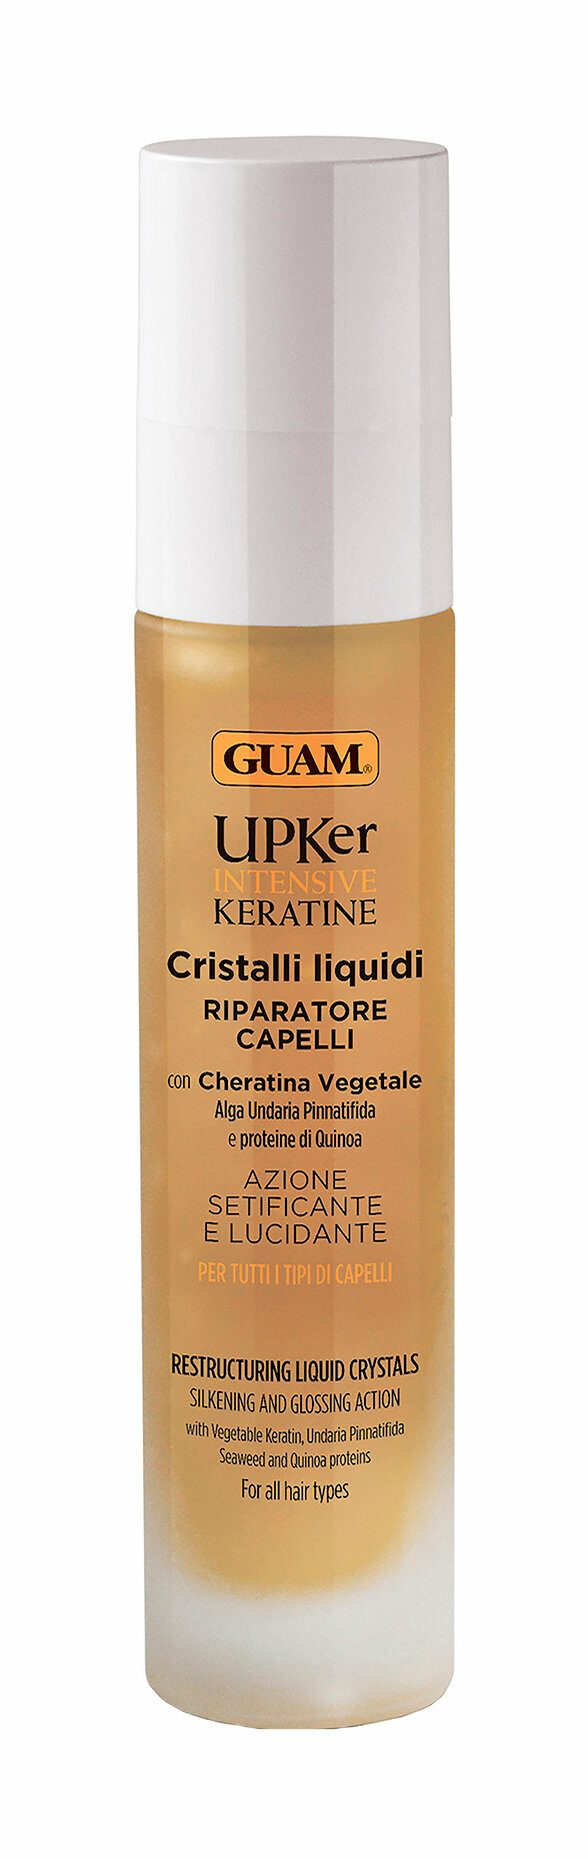 Восстанавливающее разглаживающее масло с кератином для волос, 50 мл Guam - фото №4